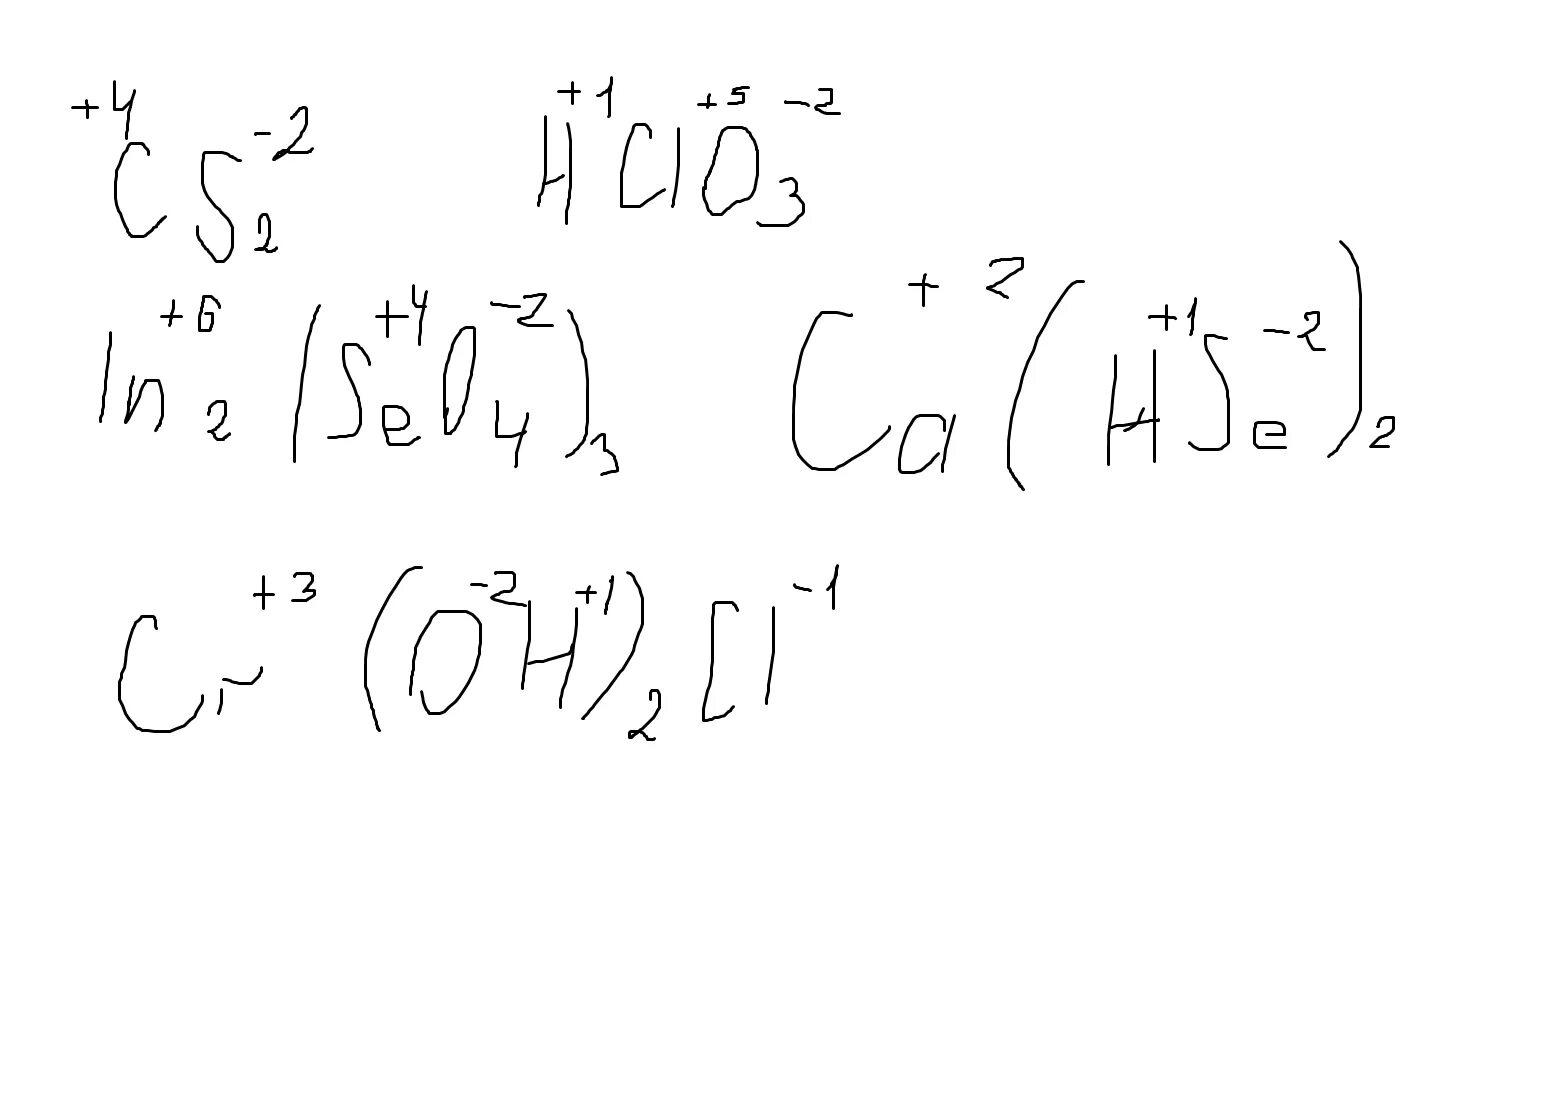 Ca oh 2 hclo4. Определите степень окисления элементов в соединениях hclo3. Определите степень окисления элементов cs2. HCLO степень окисления каждого элемента. Определите степень окисления хлора в соединениях hclo3.